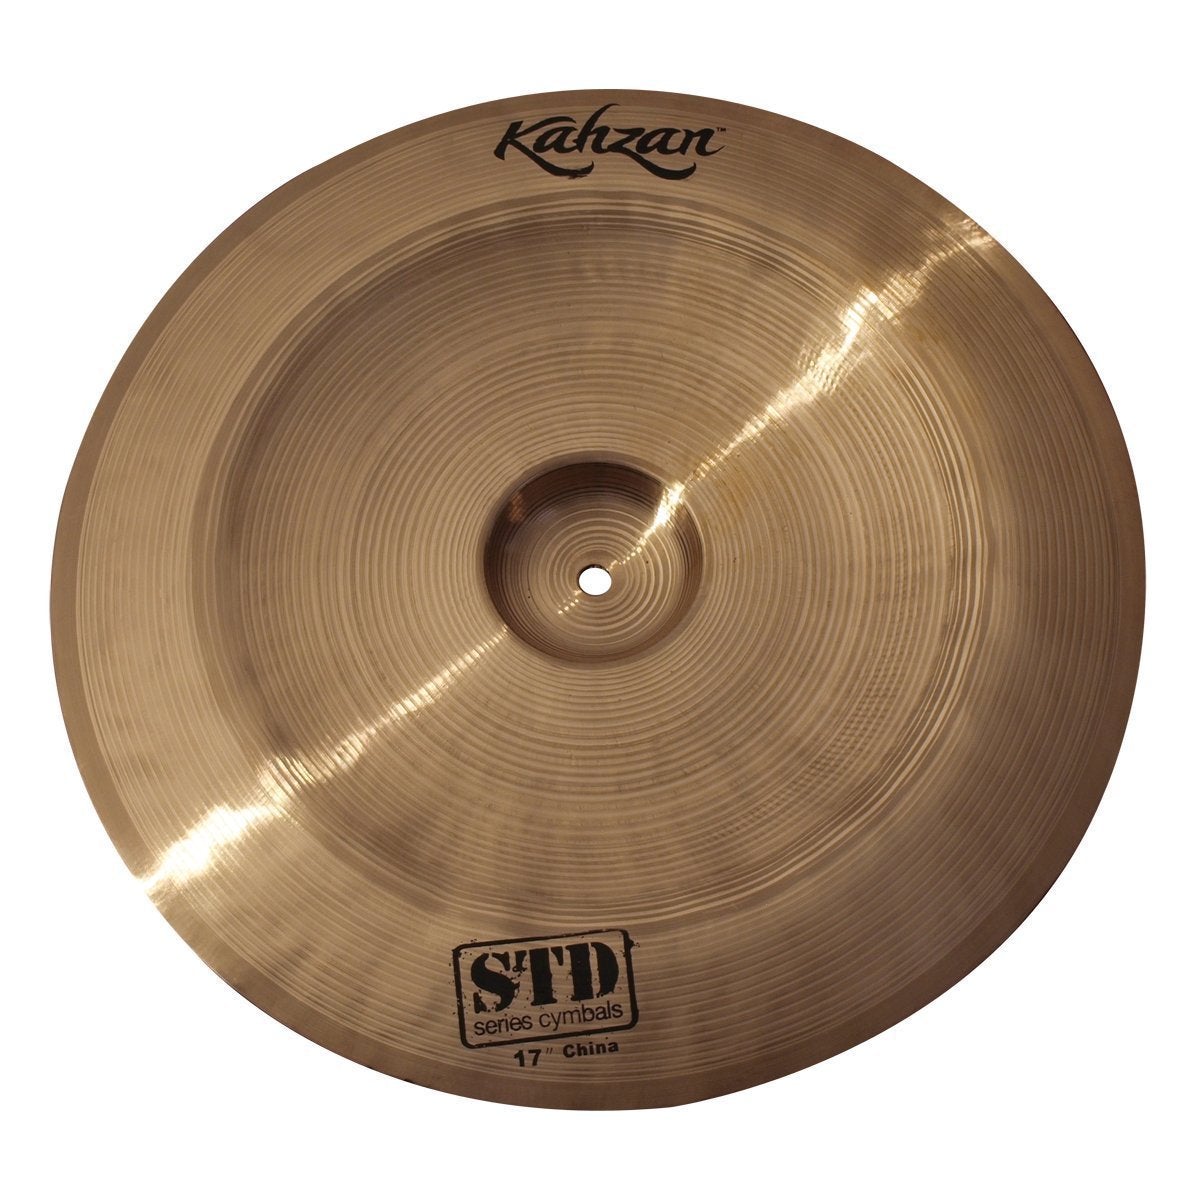 Kahzan 'STD Series' China Cymbal (17")